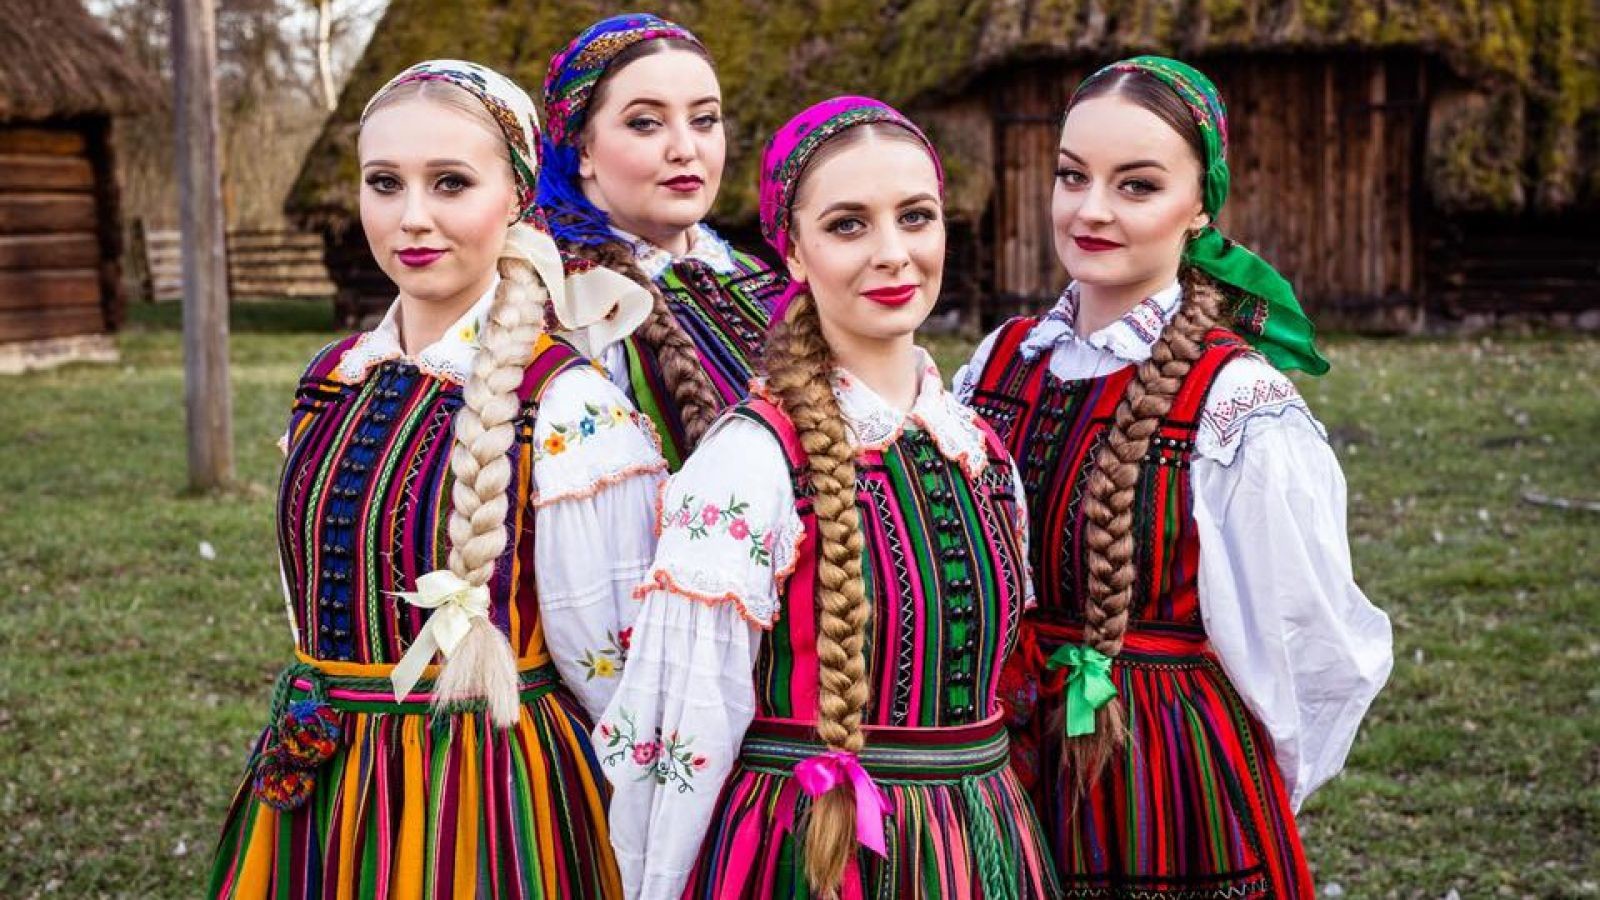 Πολωνία: Με το παραδοσιακό συγκρότημα Tulia στο Τελ Αβίβ